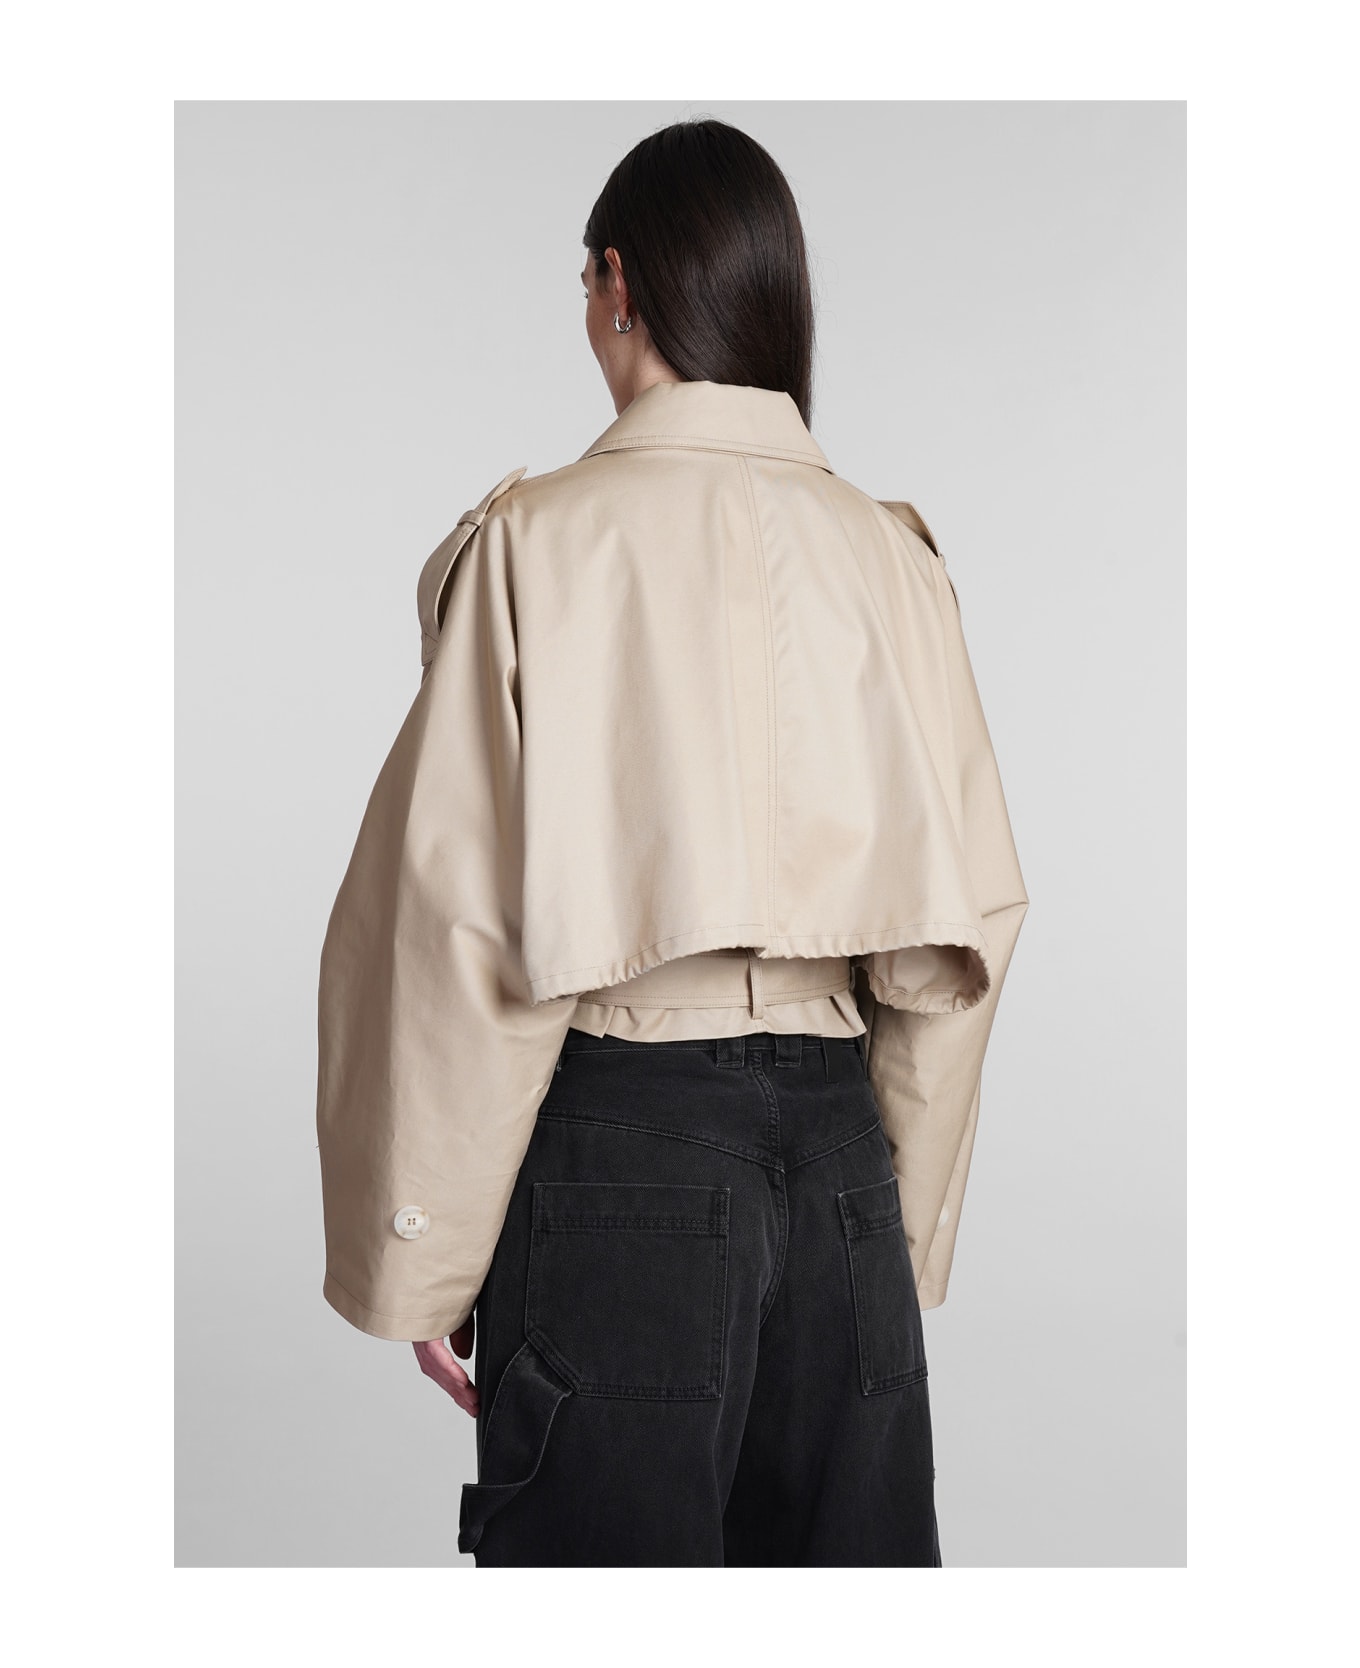 DARKPARK Penelope Casual Jacket In Beige Cotton - beige